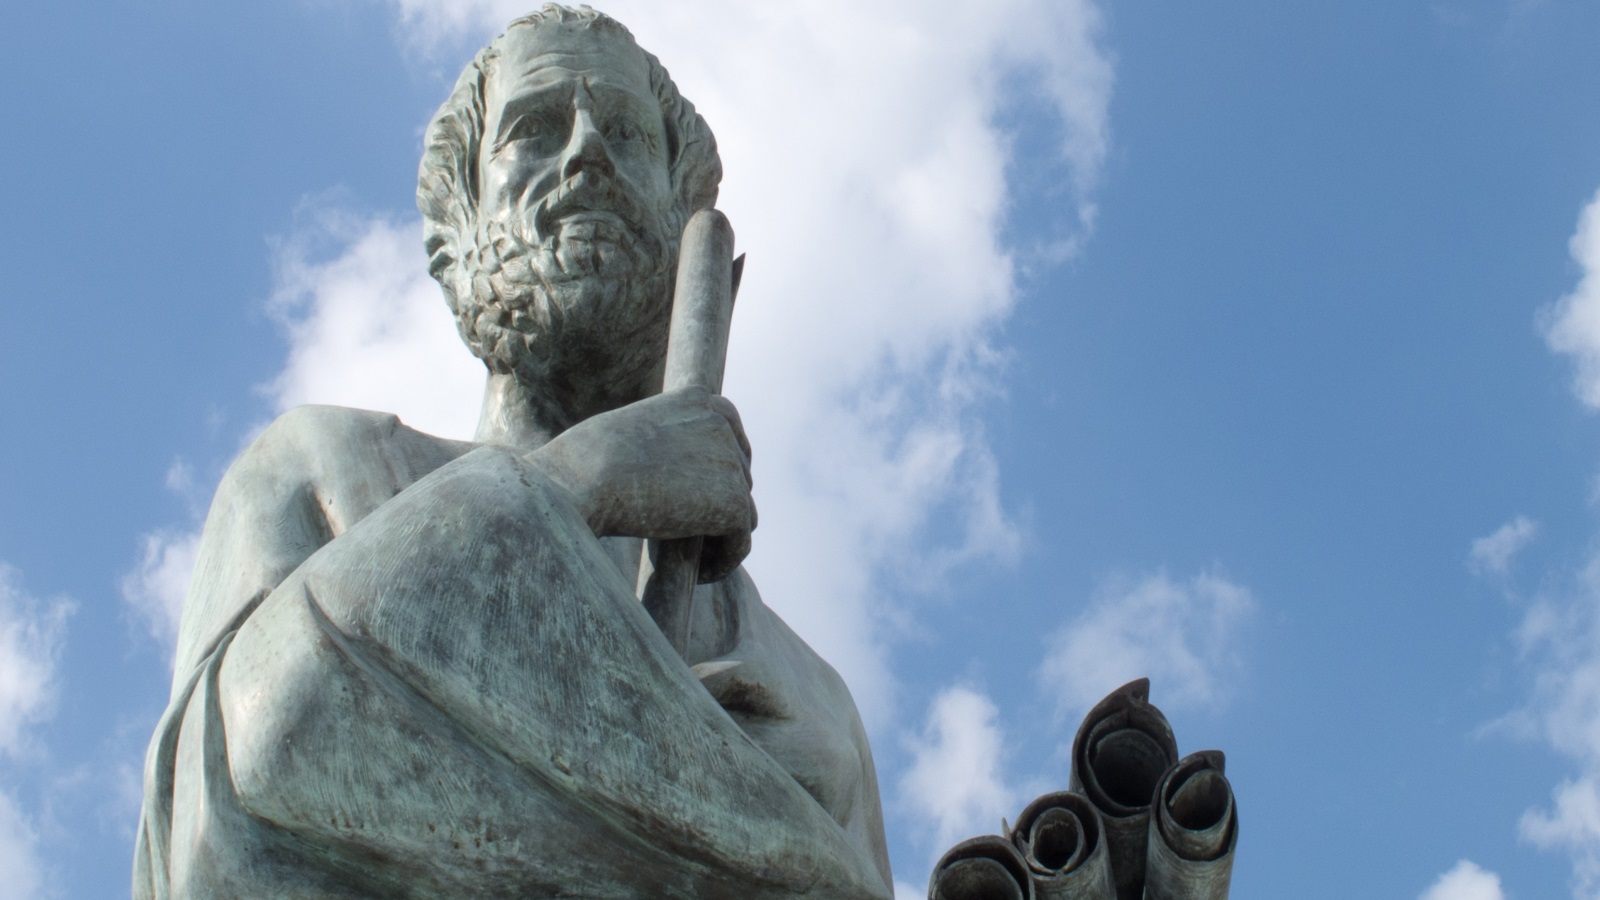 يرى أرسطو أن الفضائل تُعرّف بأنها تلك السمات التي تساعدك على الازدهار بوصفك كائنا اجتماعيا ورشيدا